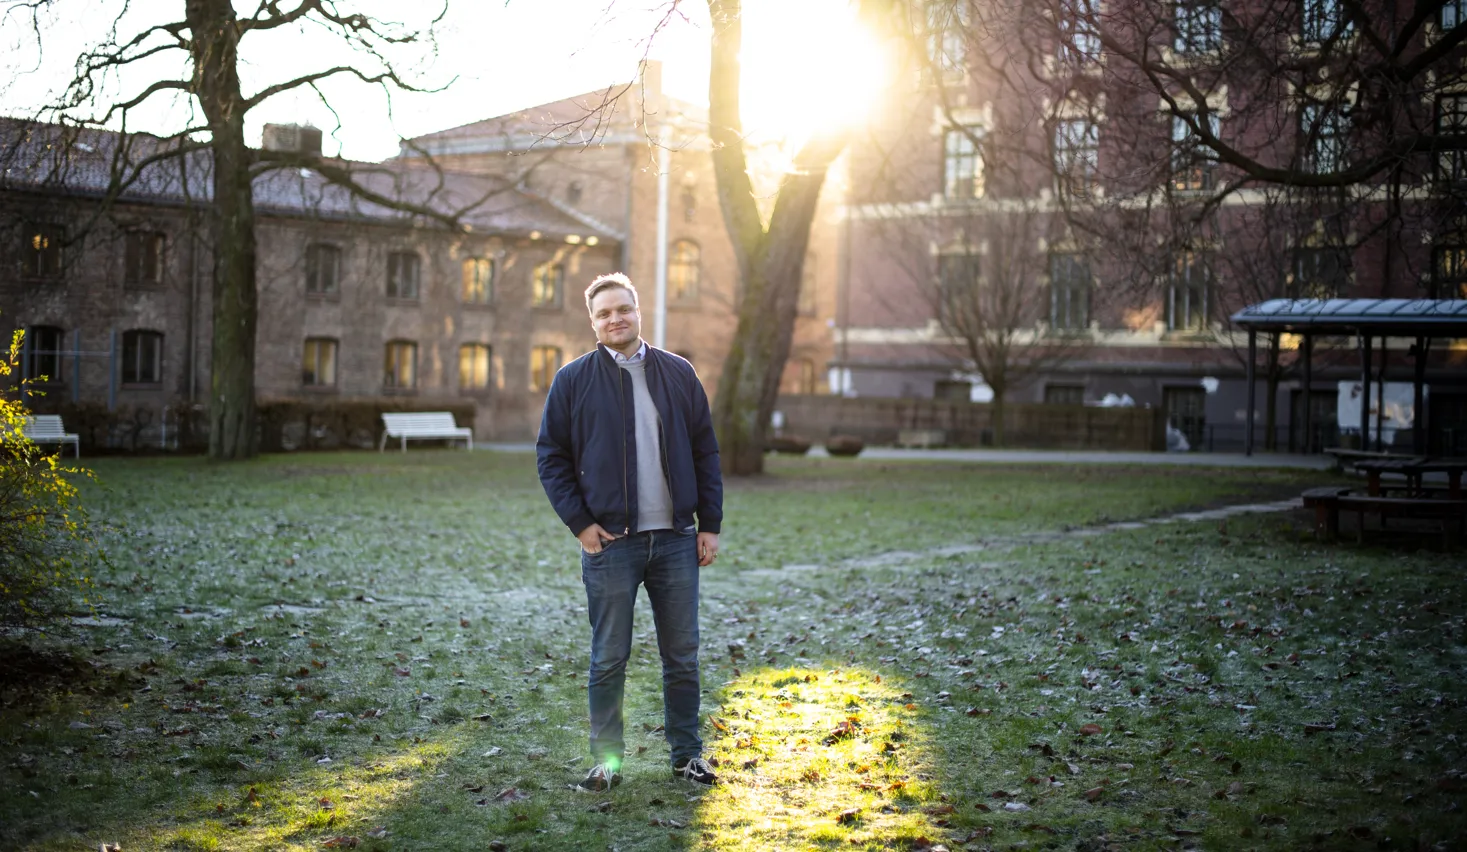 Håvard Solheim står foran et tre i en liten park foran noen byggninger